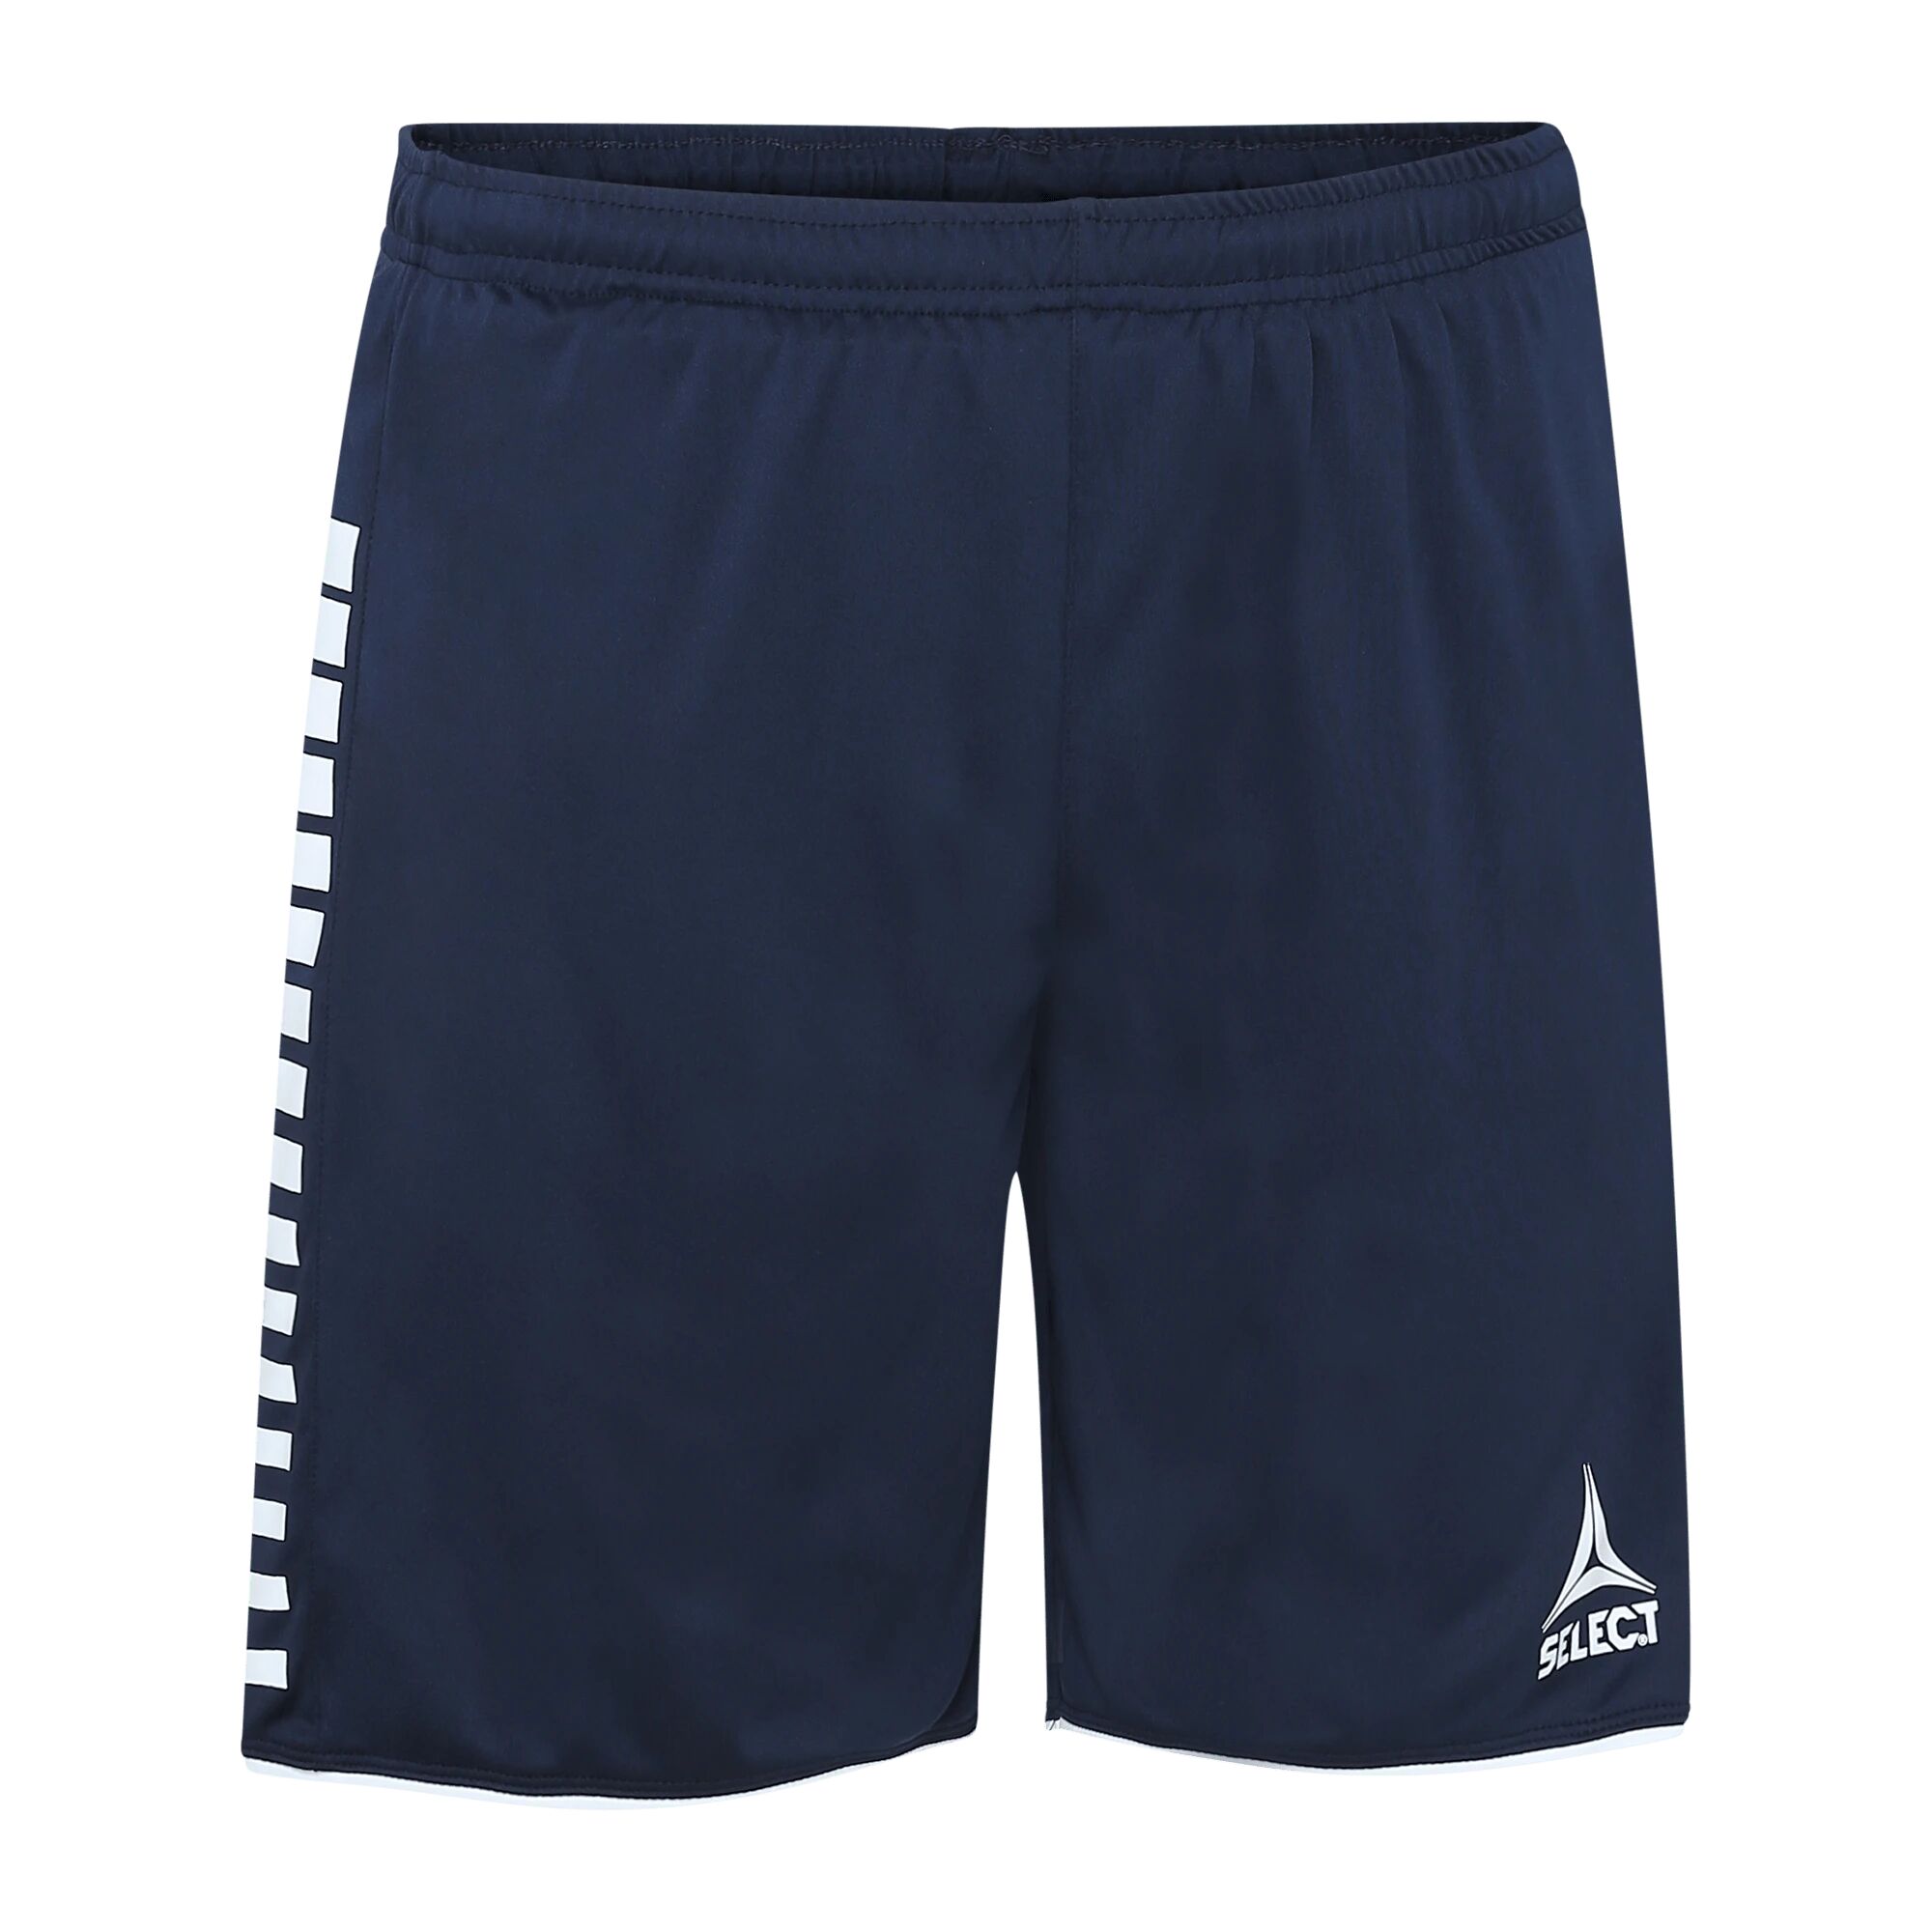 Select Player shorts Argentina, shorts Junior/Senior L navy